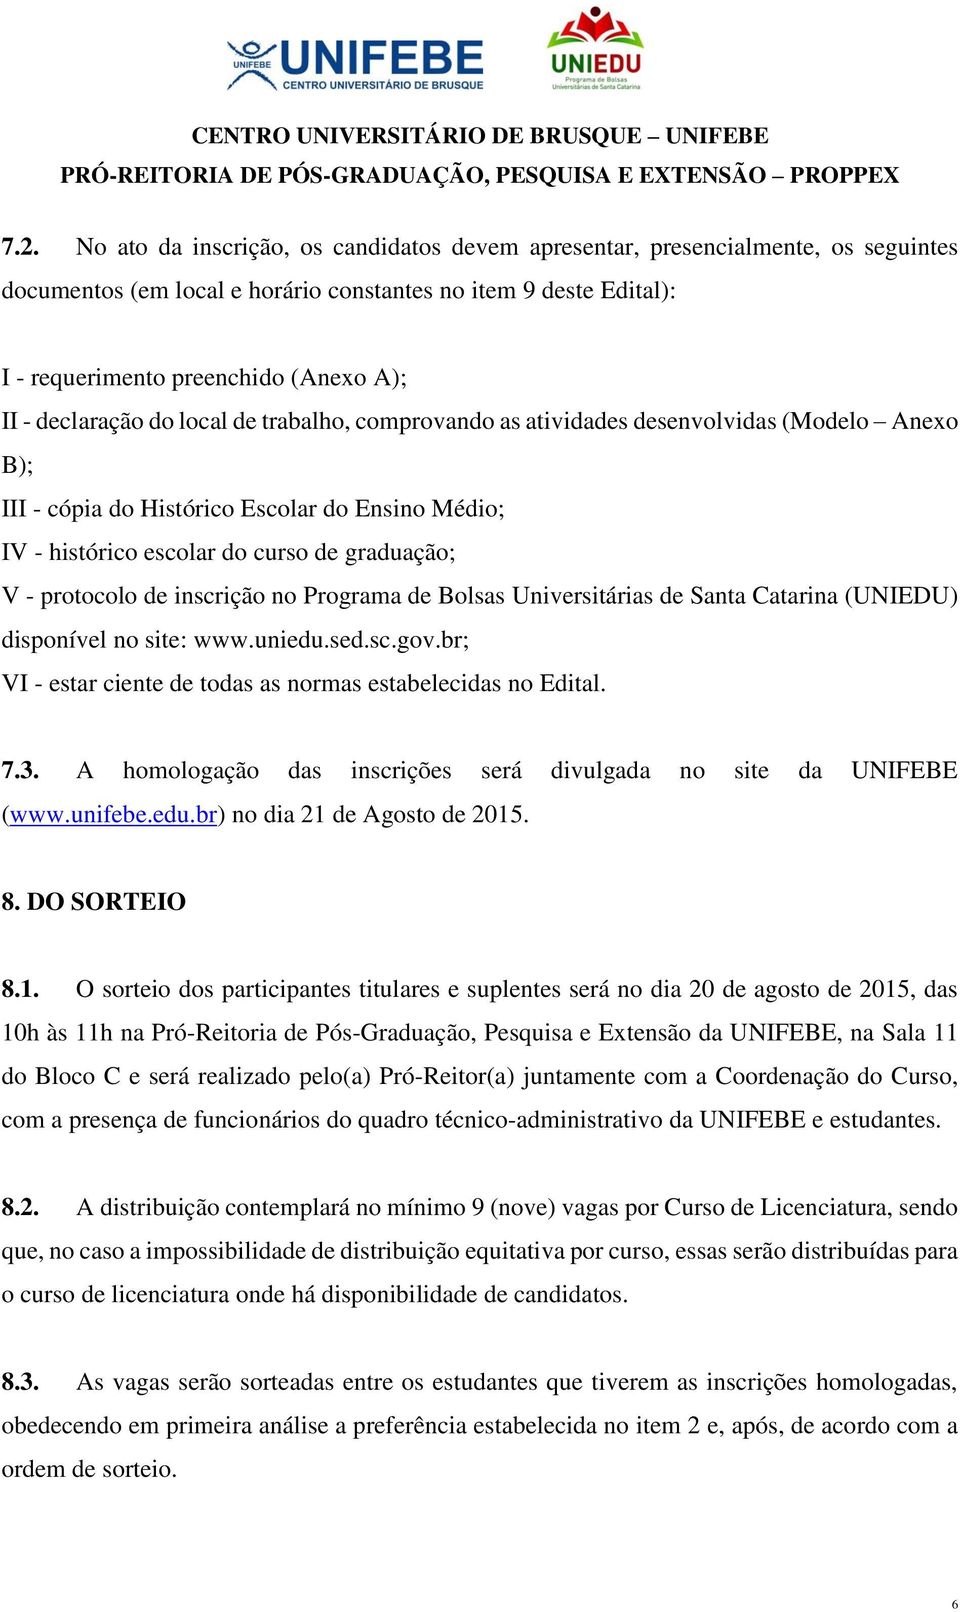 protocolo de inscrição no Programa de Bolsas Universitárias de Santa Catarina (UNIEDU) disponível no site: www.uniedu.sed.sc.gov.br; VI - estar ciente de todas as normas estabelecidas no Edital. 7.3.